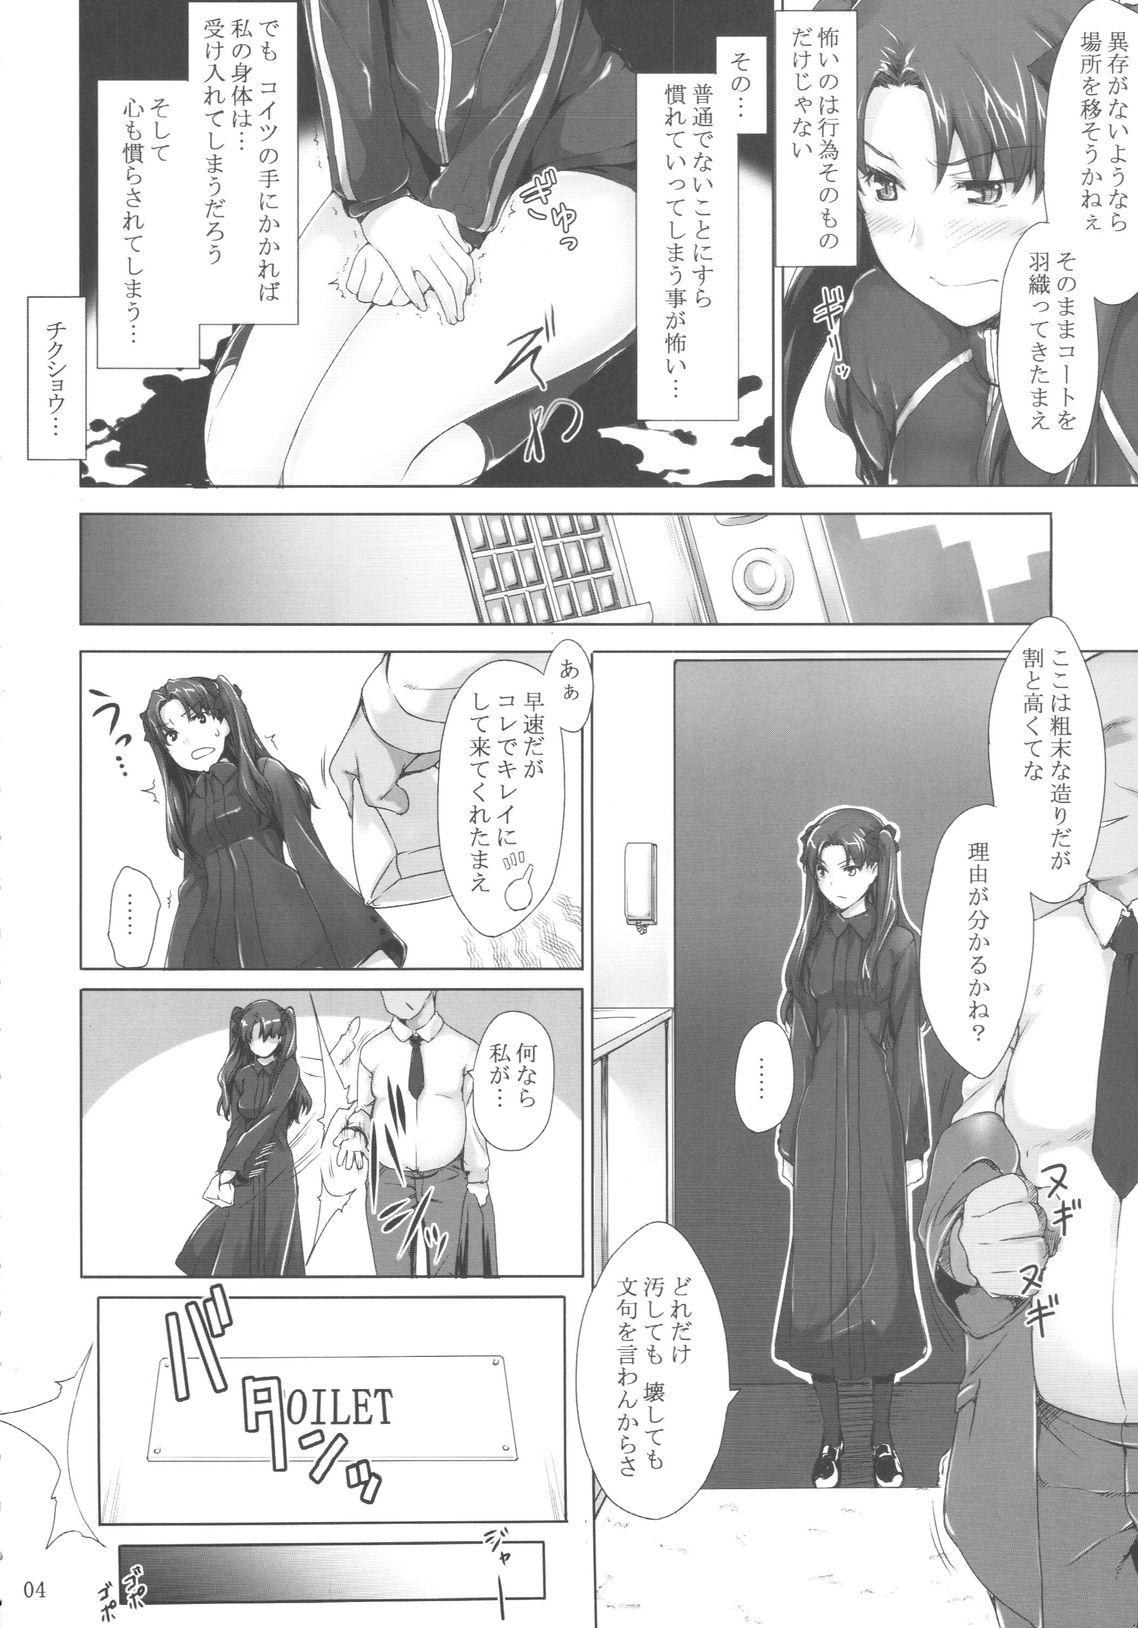 Gay Sex Tohsaka-ke no Kakei Jijou 5 - Fate stay night Spreadeagle - Page 3